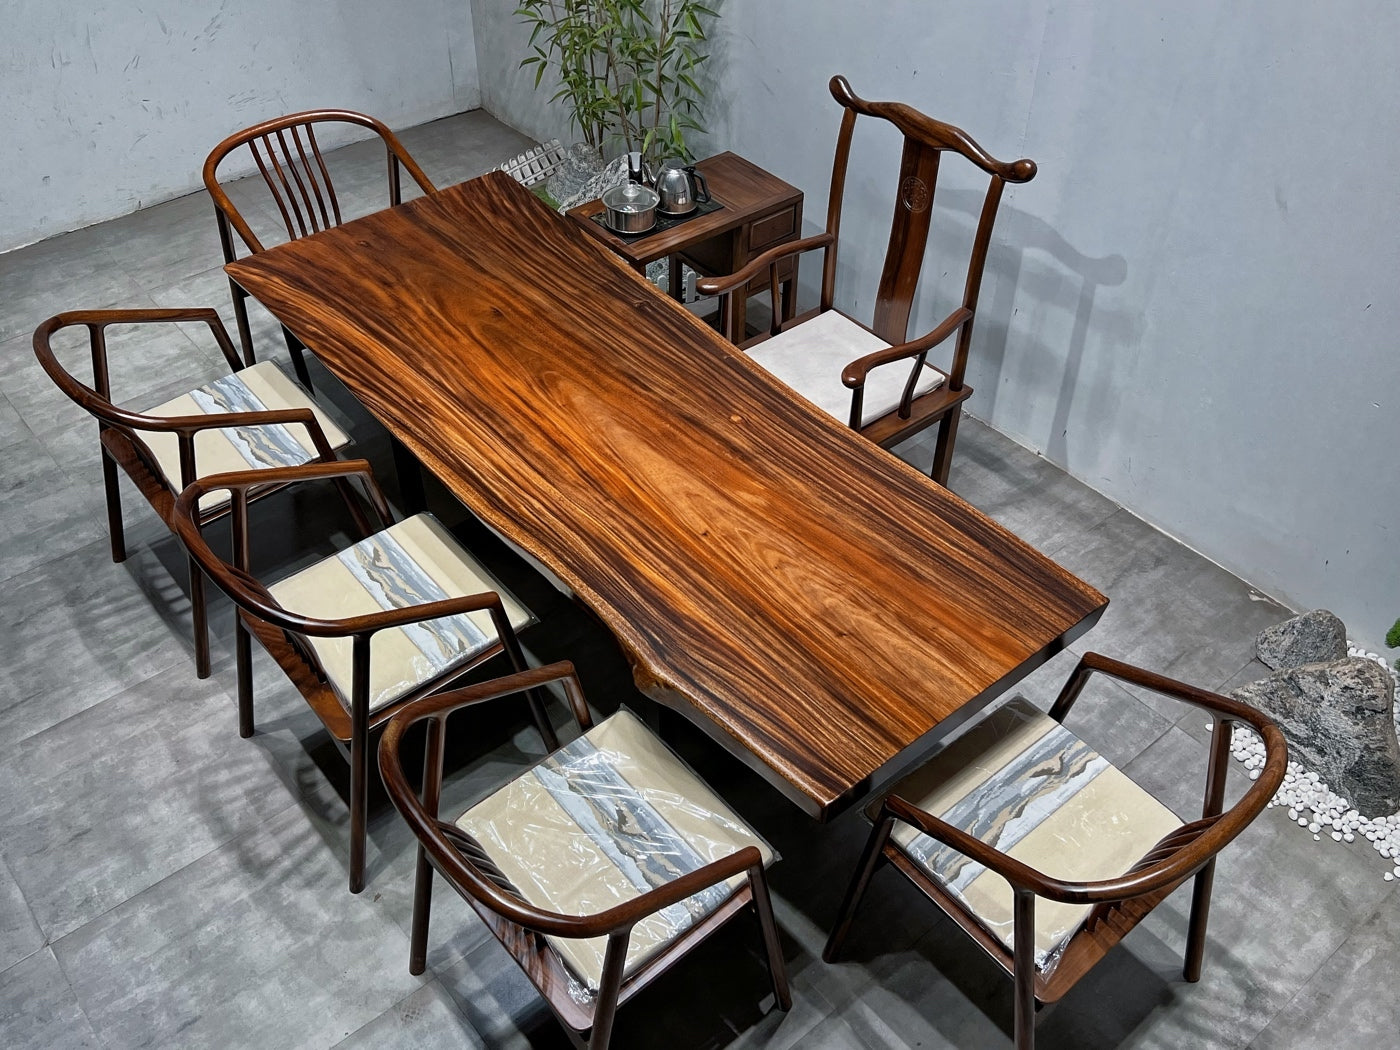 طاولة بلاطة، طاولة خشب أكاسيا - جوز أسود من أمريكا الجنوبية